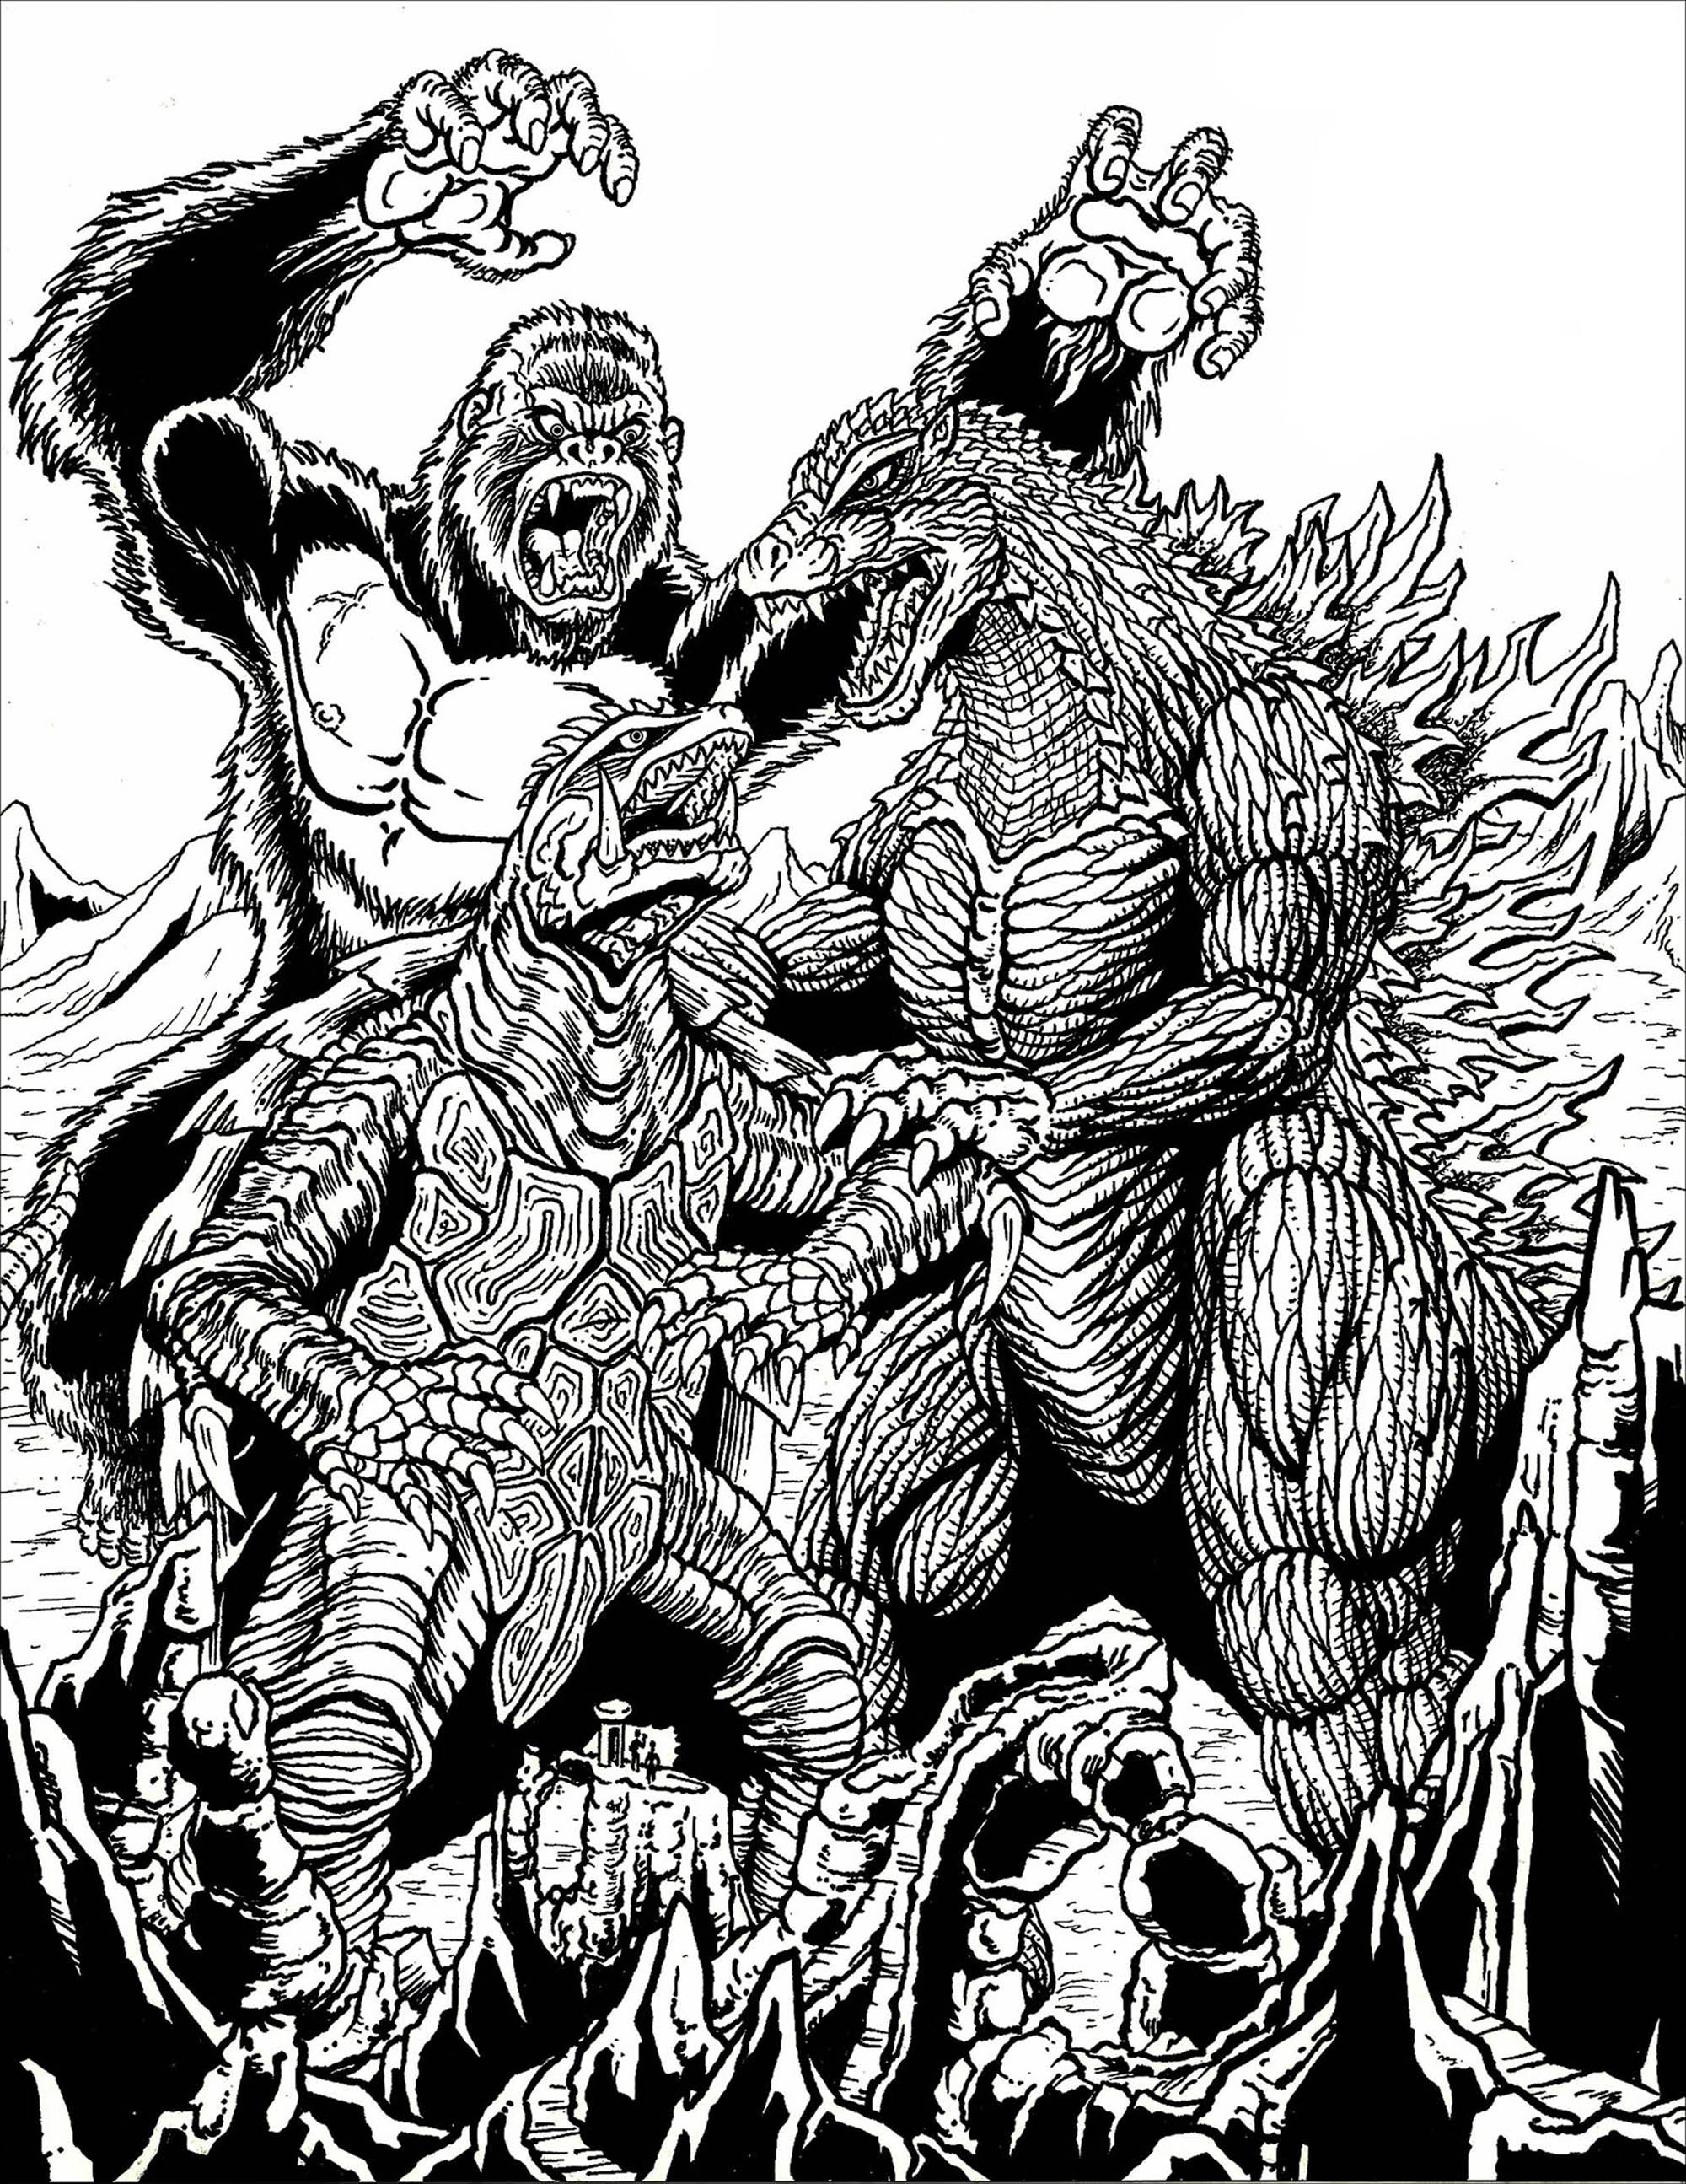 Kong vs Gamera vs Godzilla   Valentin Adult Coloring Pages